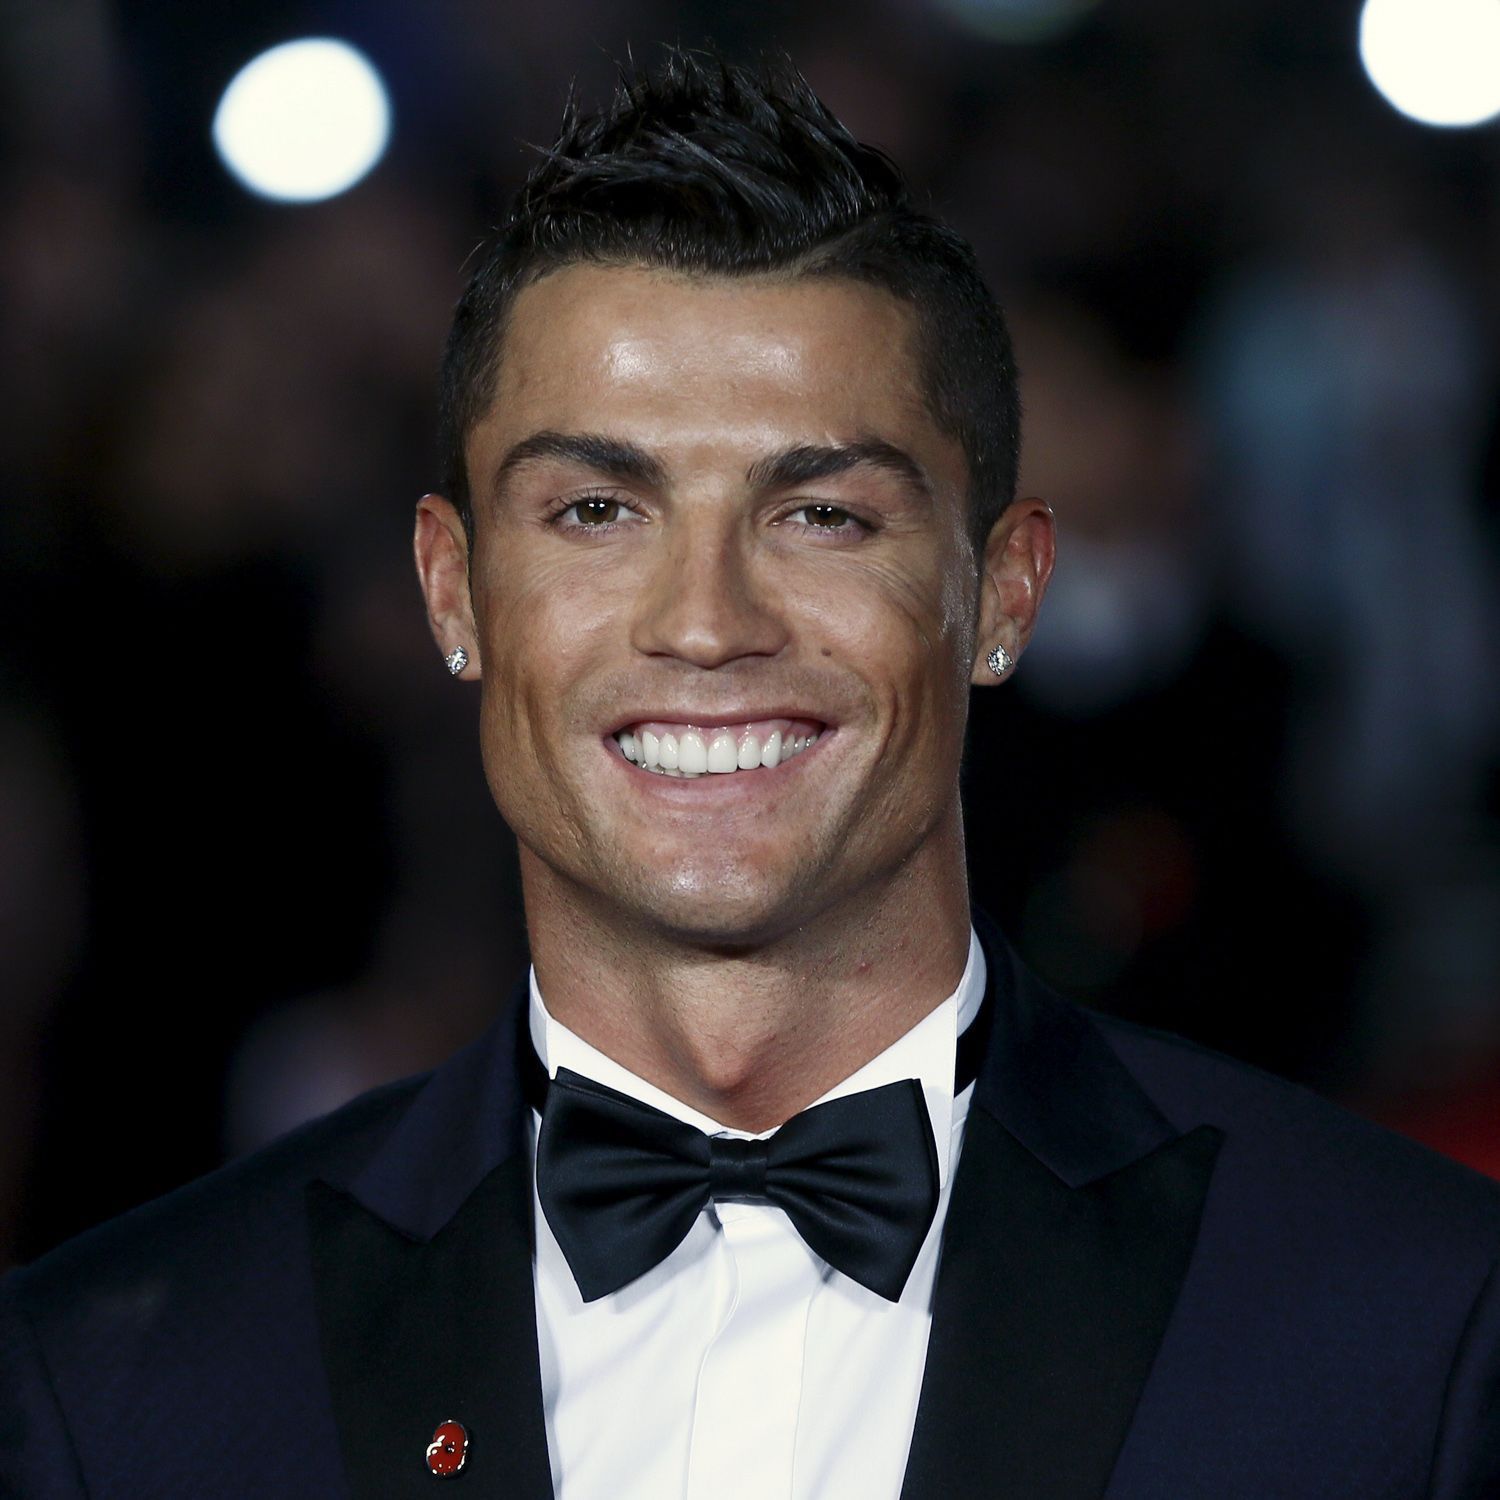 Cristiano Ronaldo found dead in his home